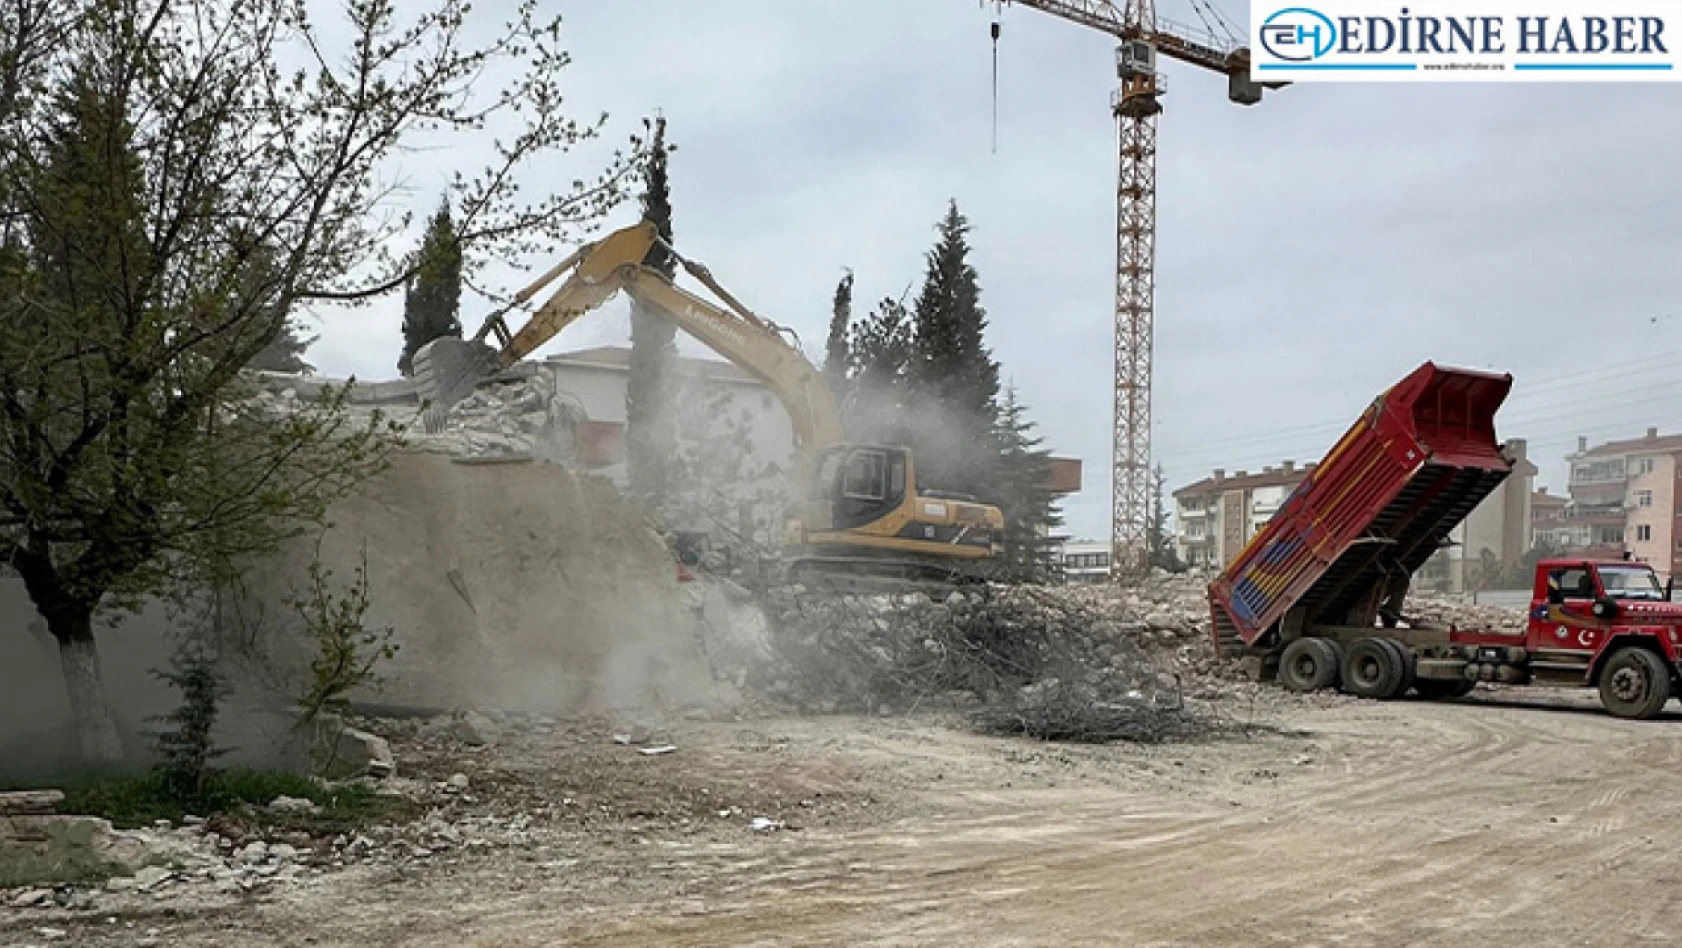 Edirne'de depreme dayanıksız olduğu belirlenen okul yıkıldı